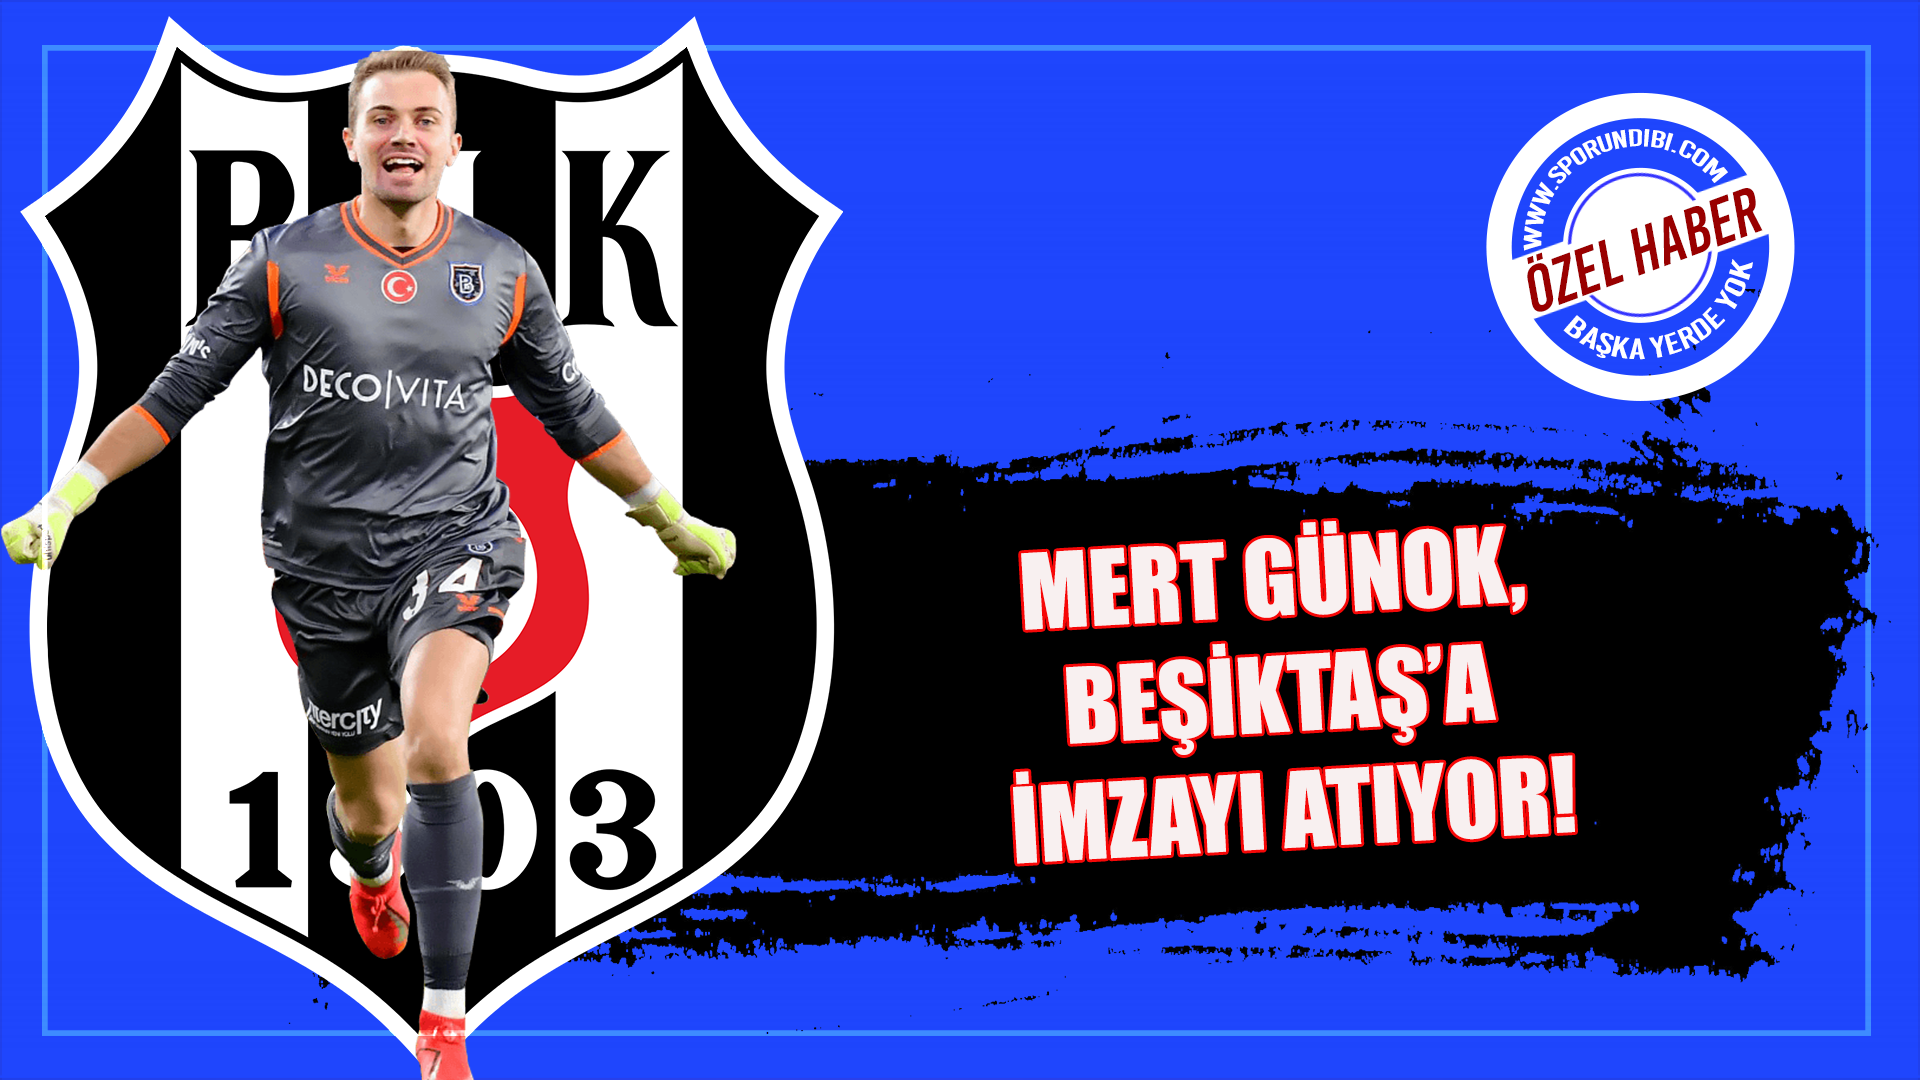 Mert Günok, Beşiktaş'a imzayı atıyor!